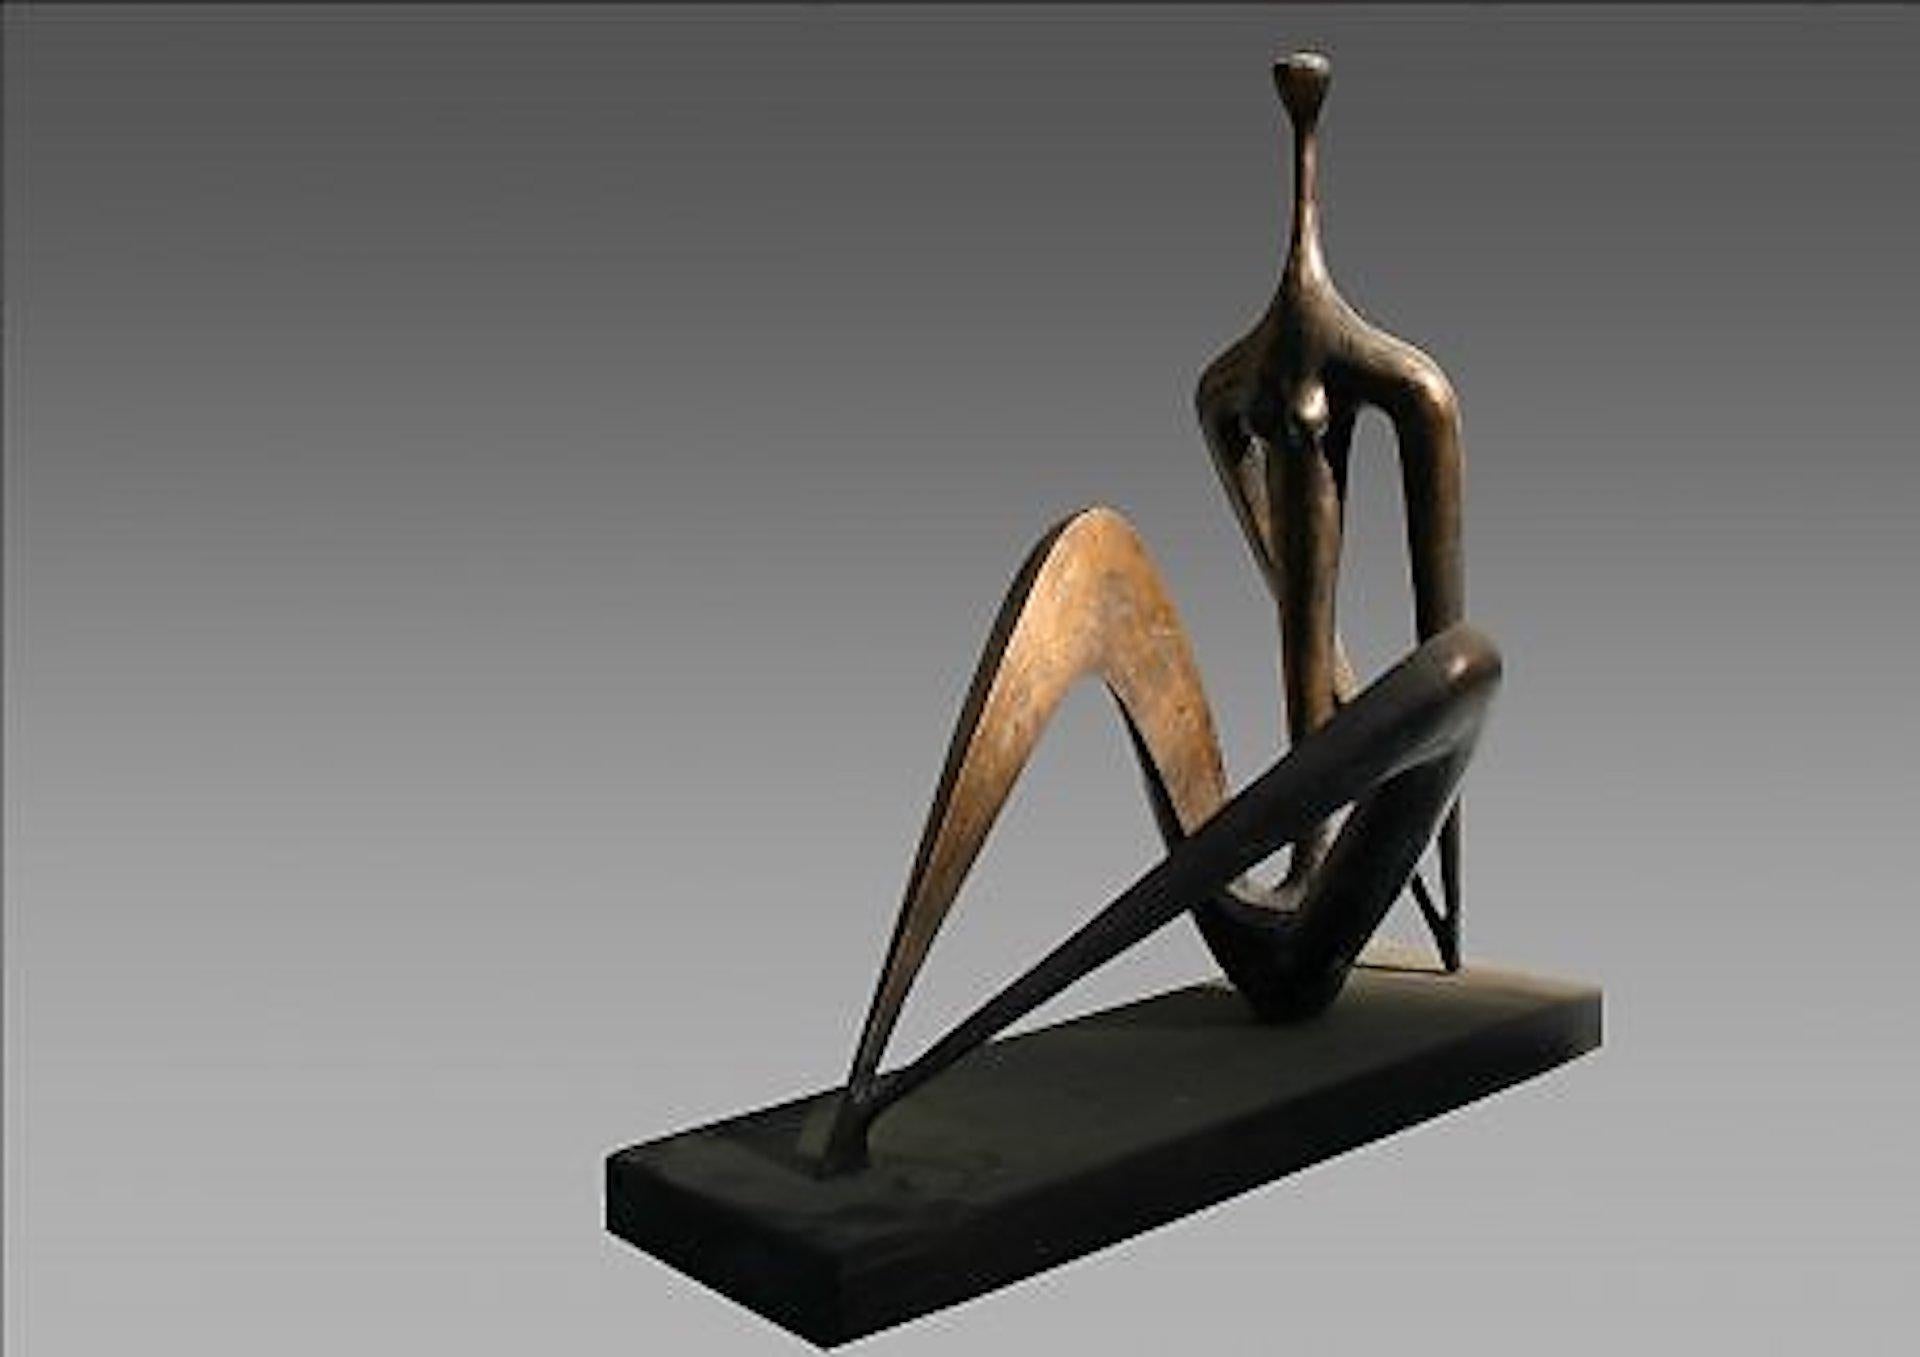 Sculpture en bronze et en bois 

Rezo Khasia est un artiste géorgien né en 1947 qui vit et travaille à Tbilissi, en Géorgie. Les sculptures qu'il réalise sont généralisées et minimalistes. Il utilise comme matériau de travail le bronze, le bois, la